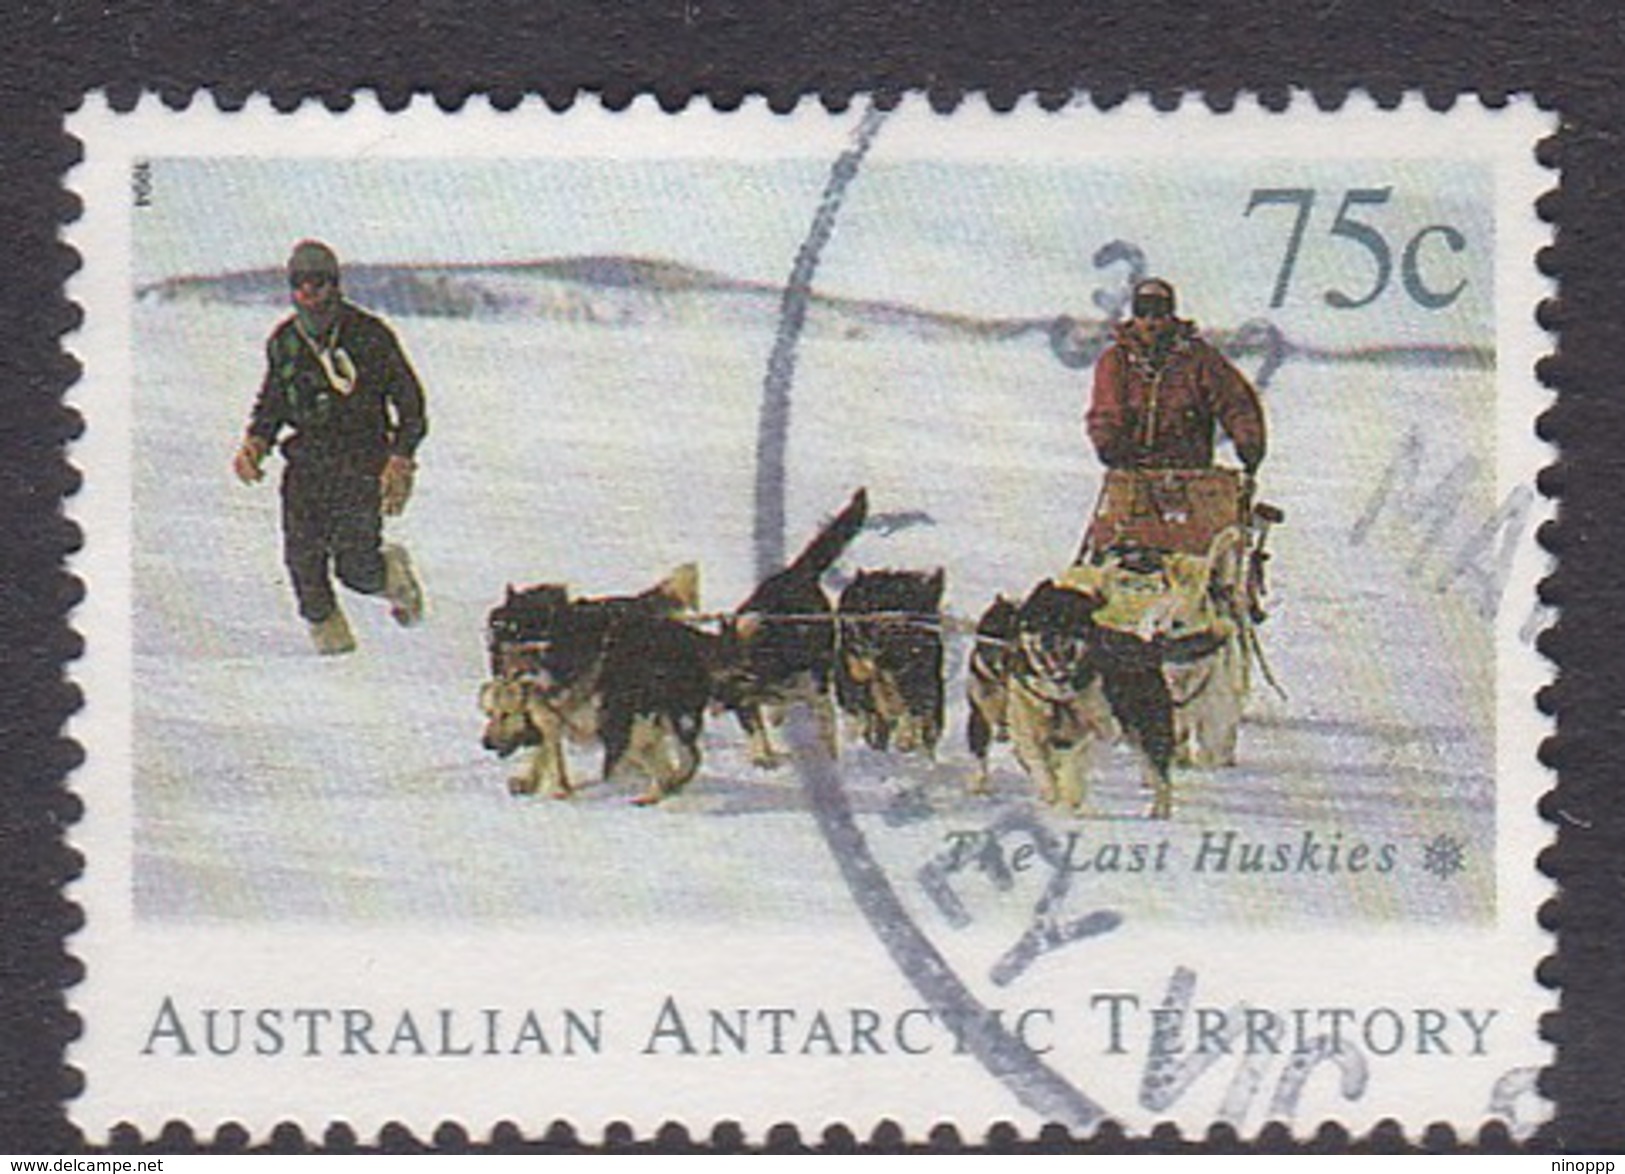 Australian Antarctic Territory  S 99 1994 The Last Huskies 75c Dog Team Used - Used Stamps